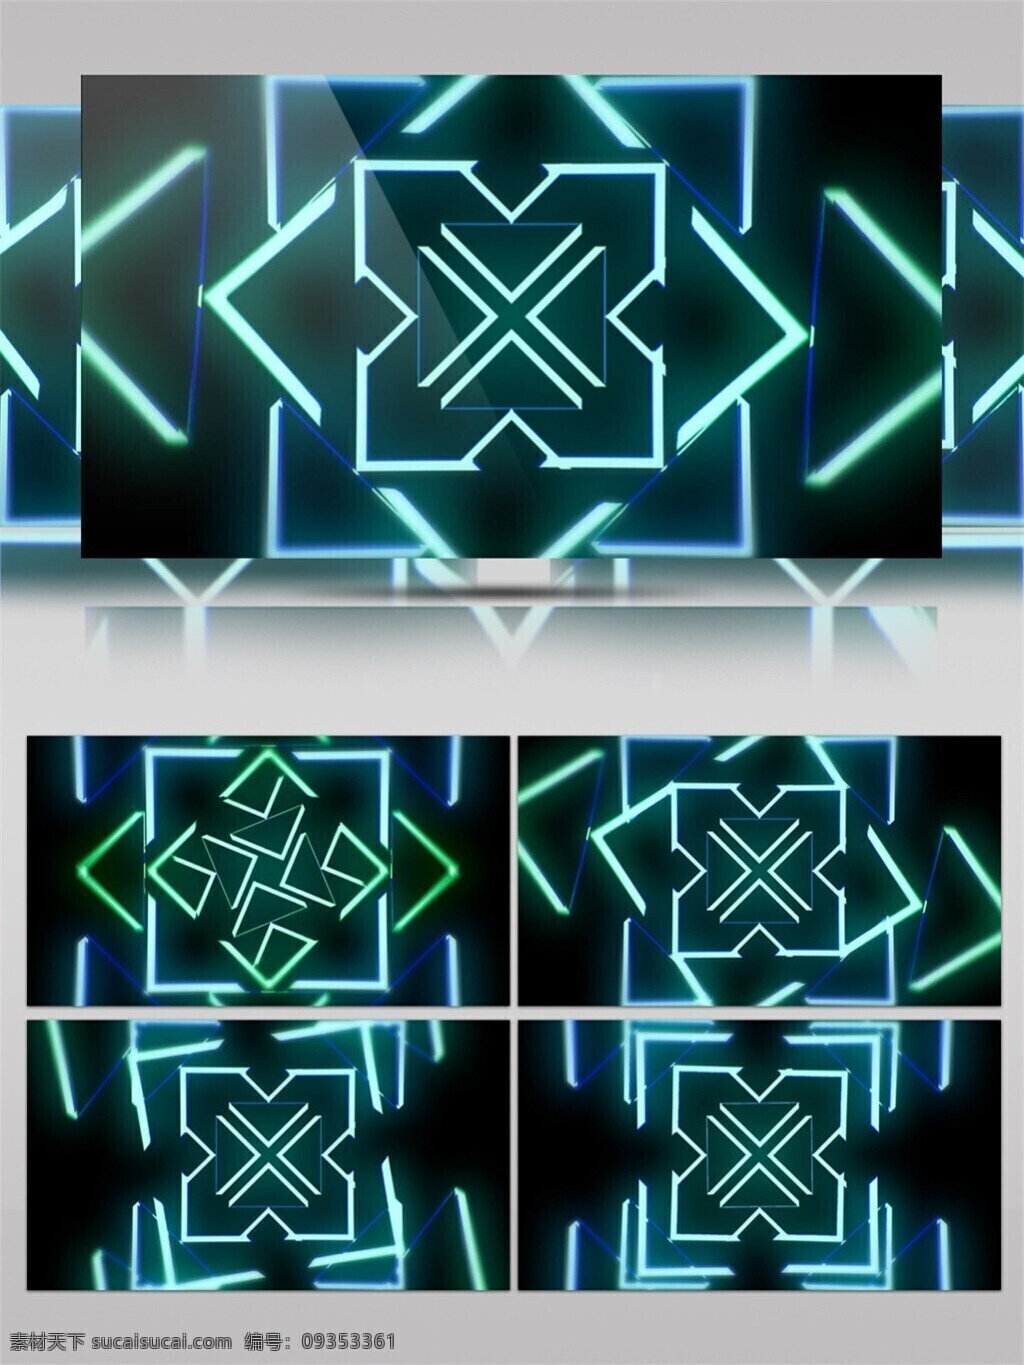 蓝色 激光 矩阵 视频 光芒穿梭 特效视频素材 背景视频素材 绿色 白色